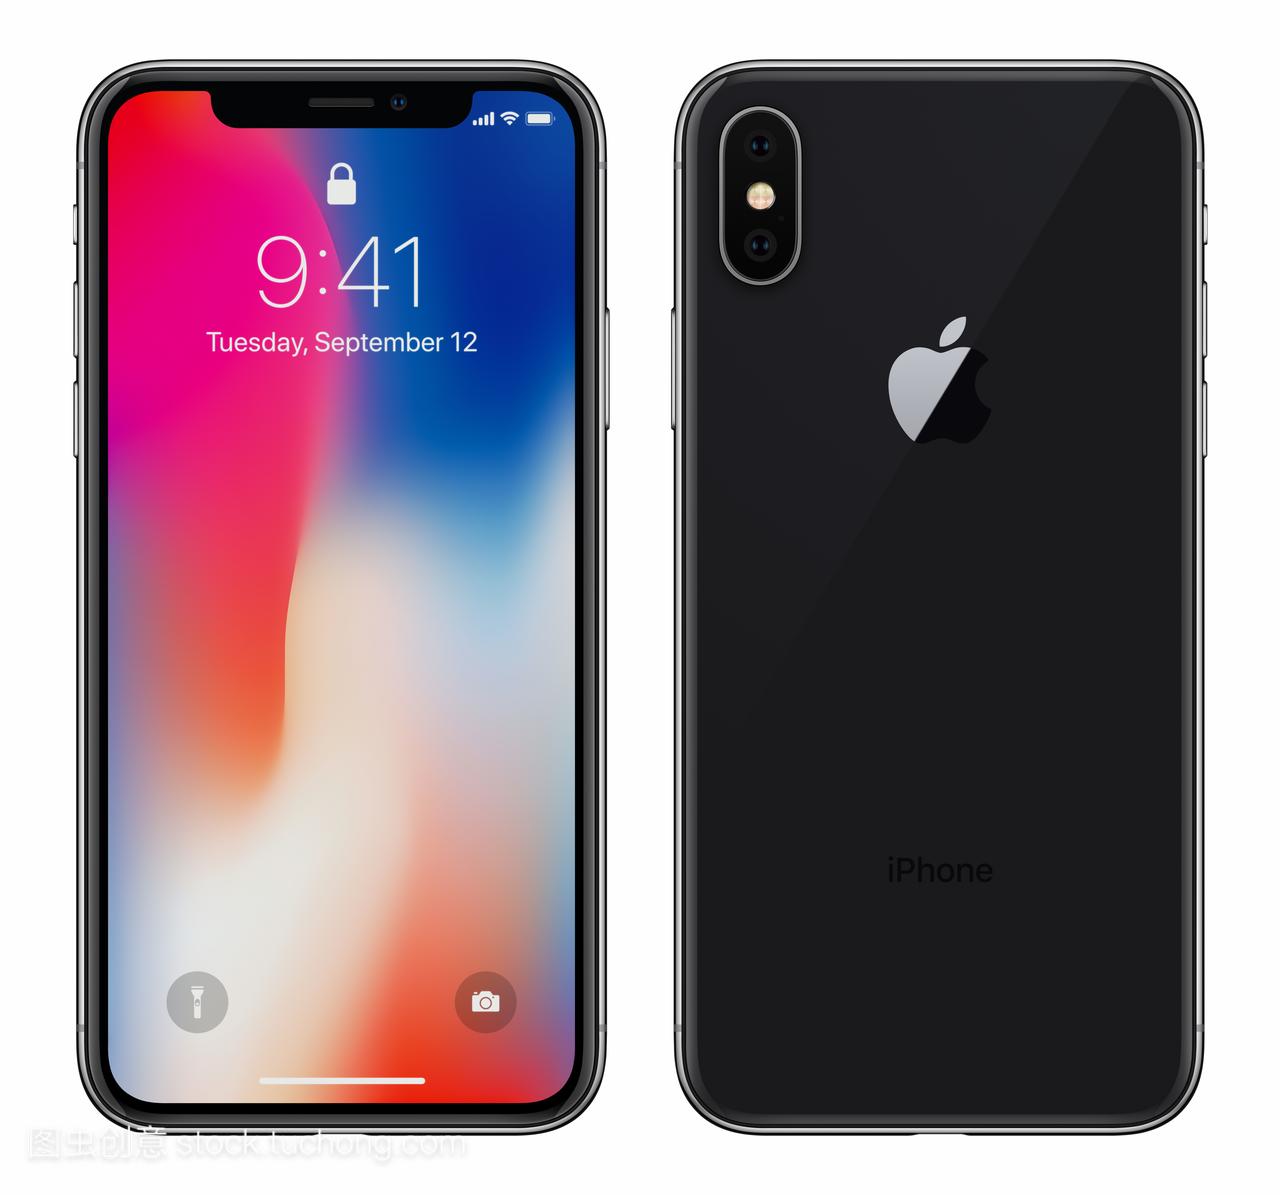 黑苹果 iphone X 与 ios 11 锁屏界面前侧和背面